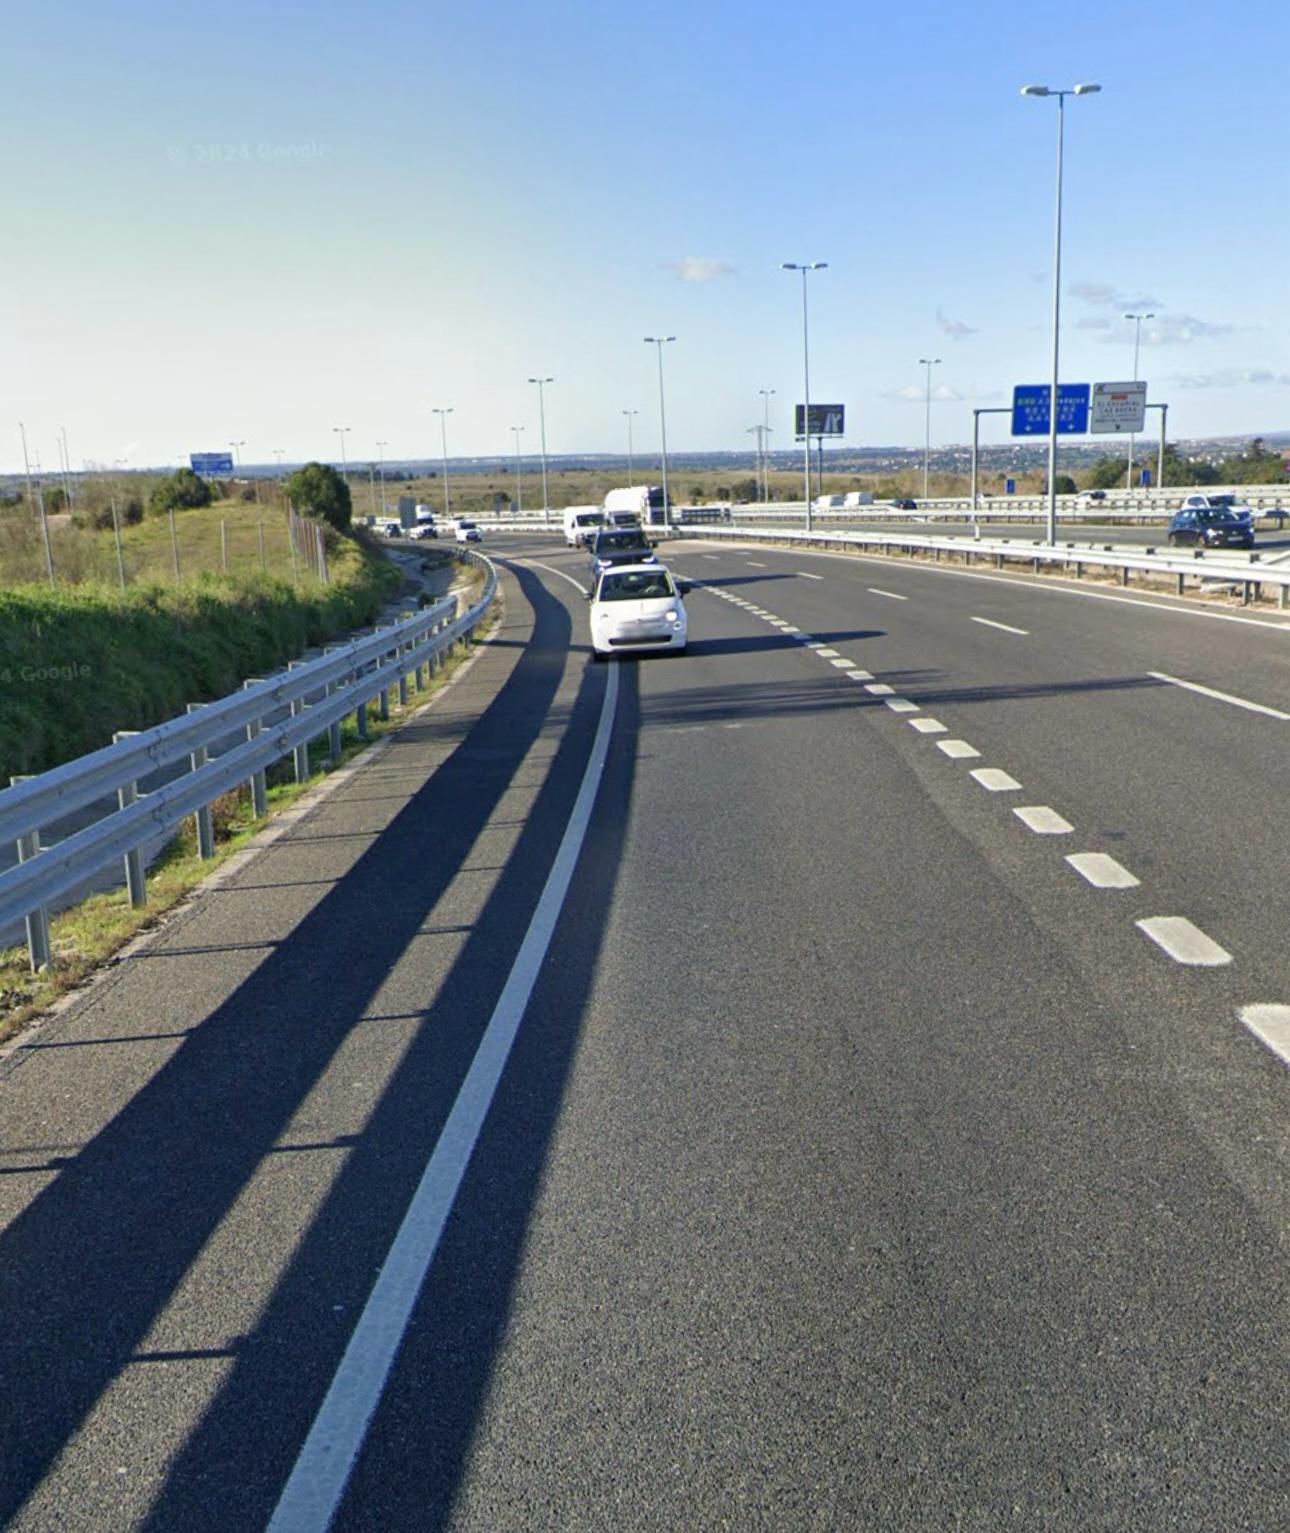 Google Maps.-Aumentan las preocupaciones por las peligrosas carreras clandestinas en la M-50 de Madrid